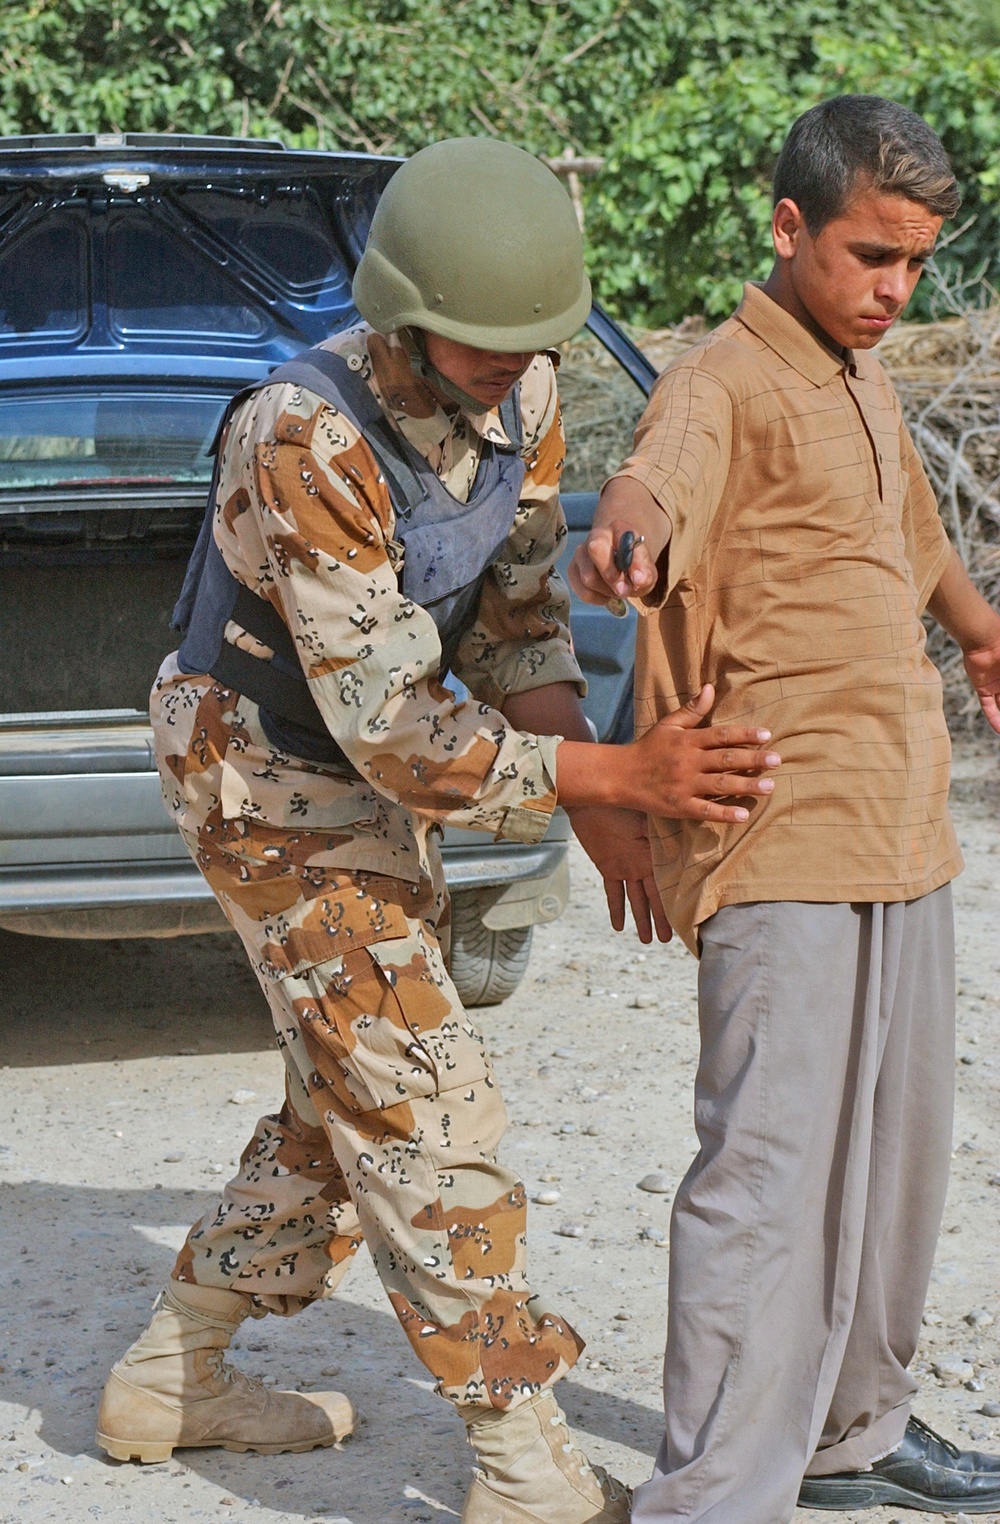 An Iraqi Army soldier pats-down an Iraqi civilian